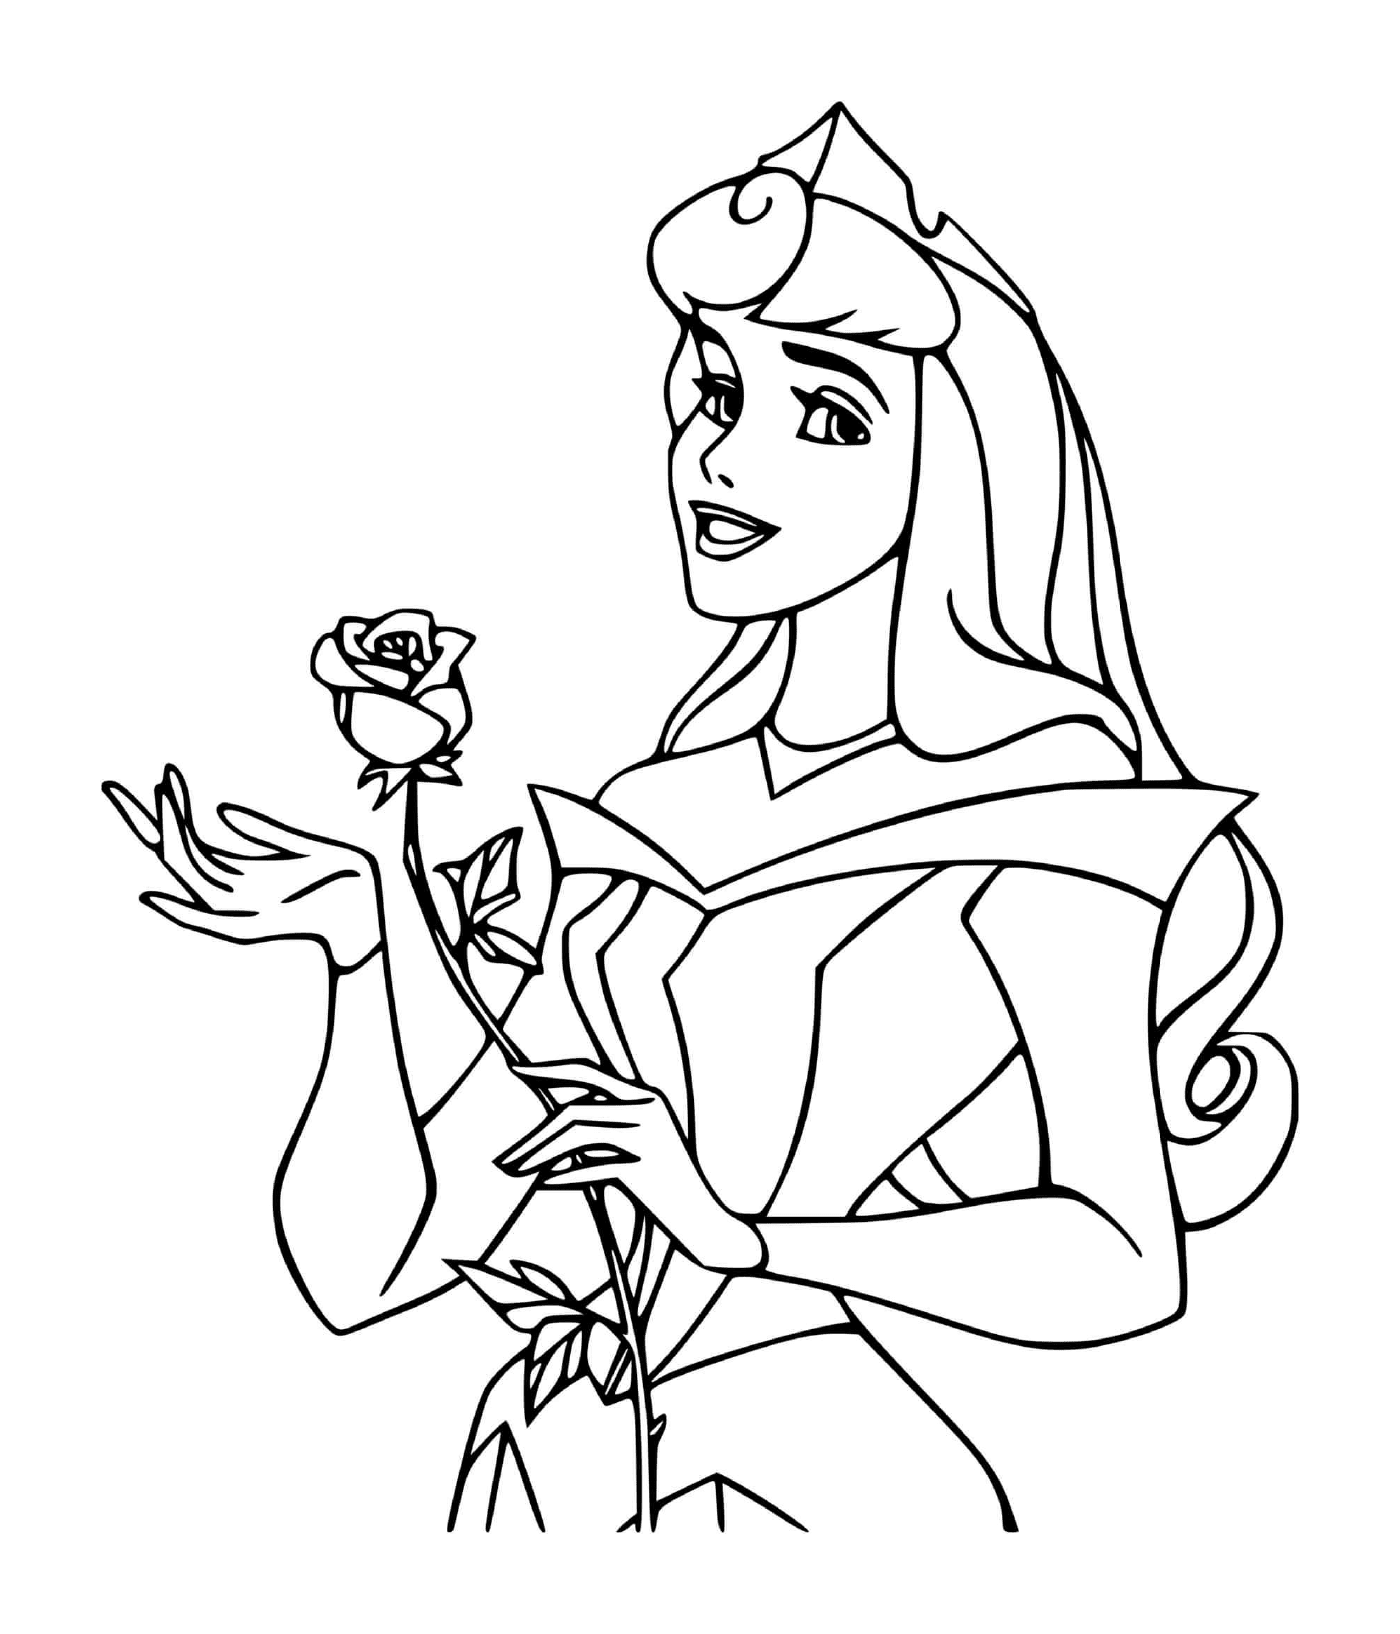  أميرة لابيل أو بوافل (ديسني) مع وردة 